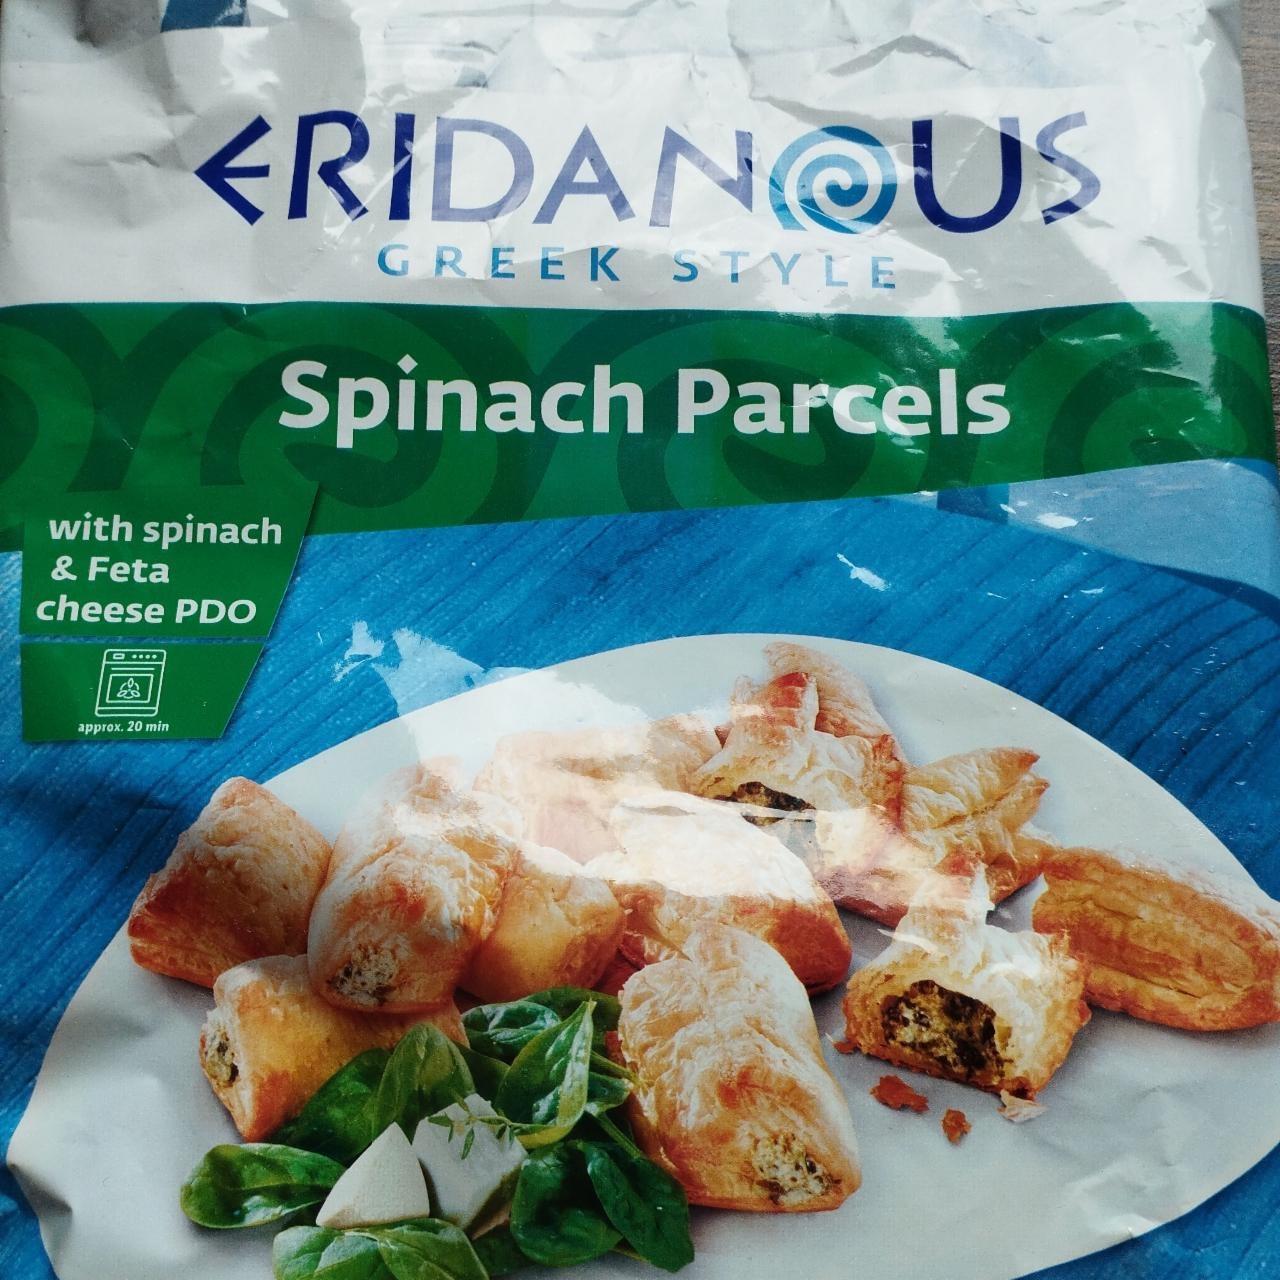 Képek - Spinach parcels Eridanous